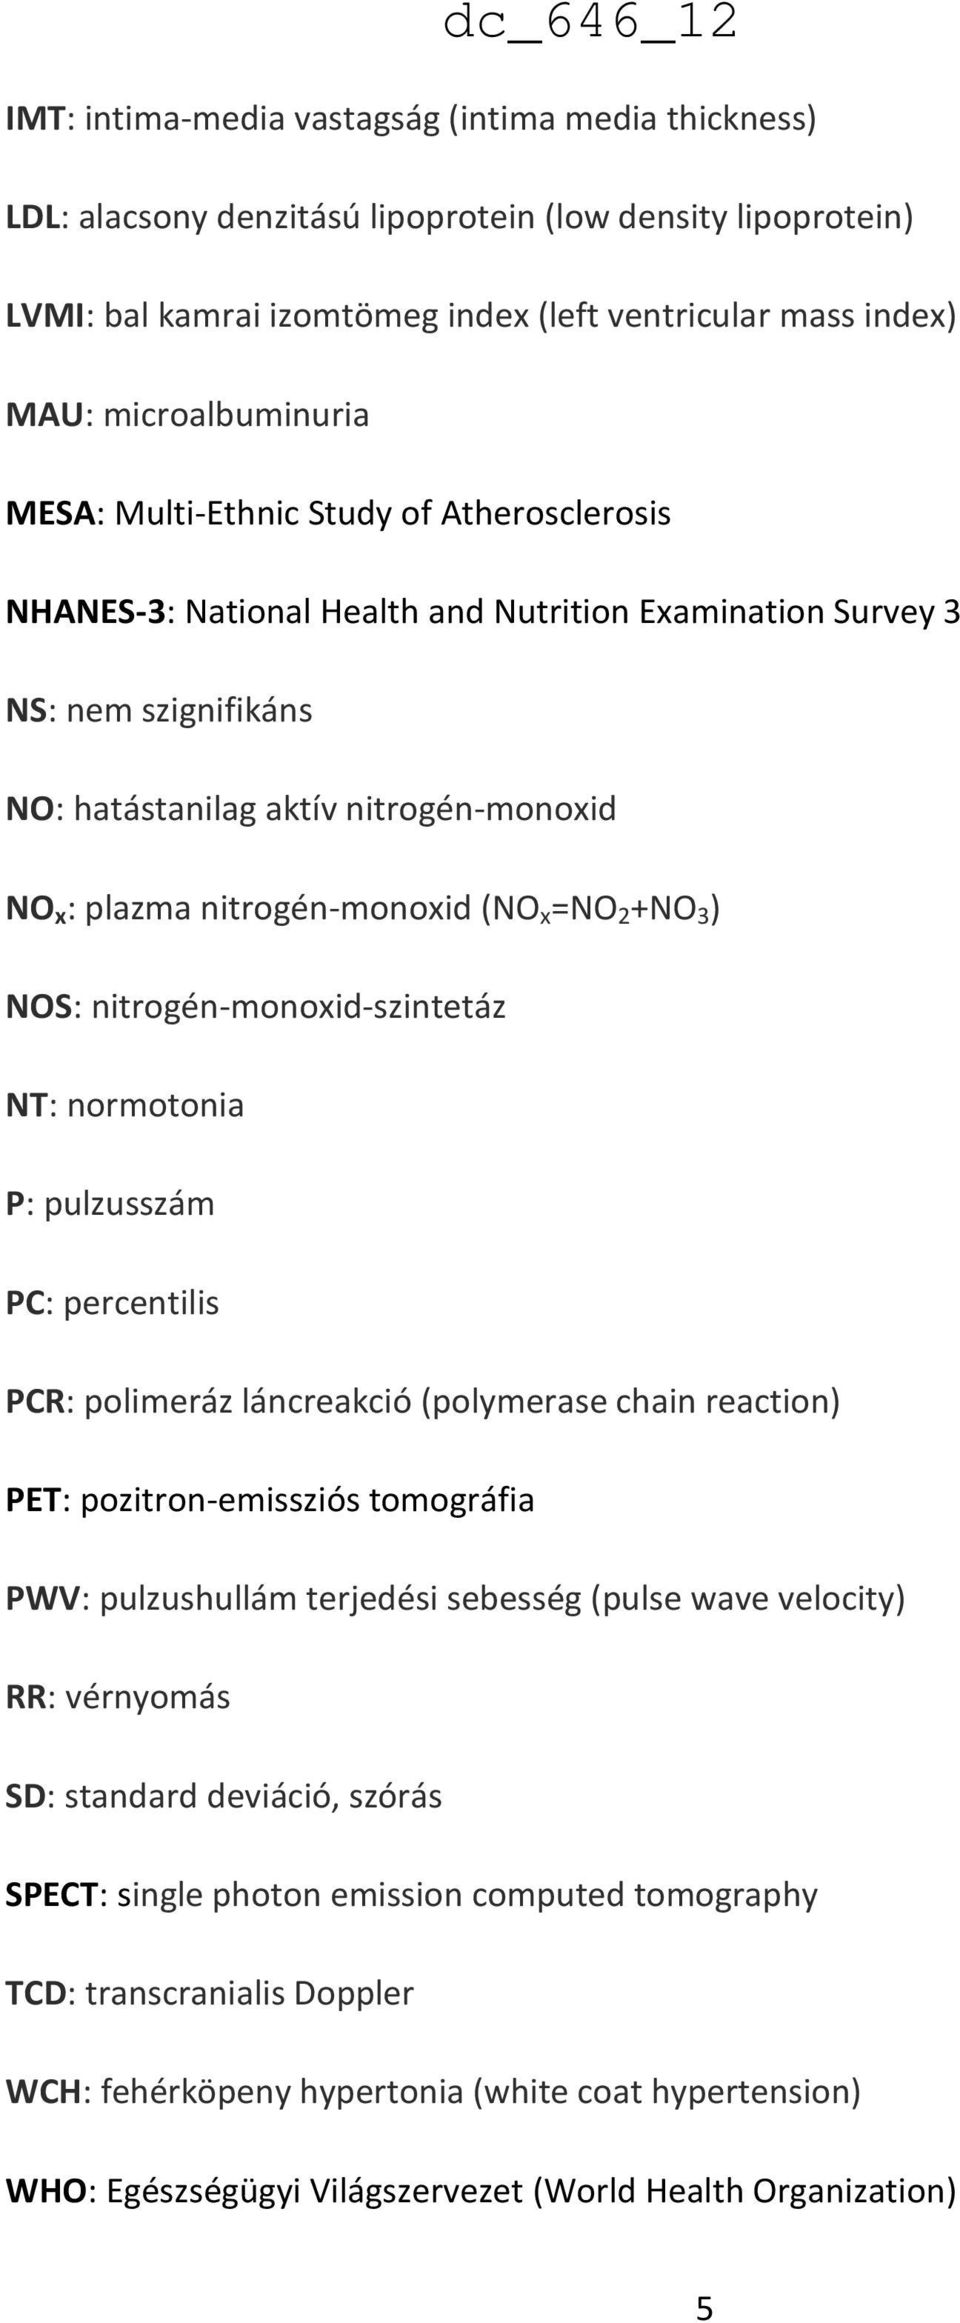 (NO x =NO 2 +NO 3 ) NOS: nitrogén-monoxid-szintetáz NT: normotonia P: pulzusszám PC: percentilis PCR: polimeráz láncreakció (polymerase chain reaction) PET: pozitron-emissziós tomográfia PWV: